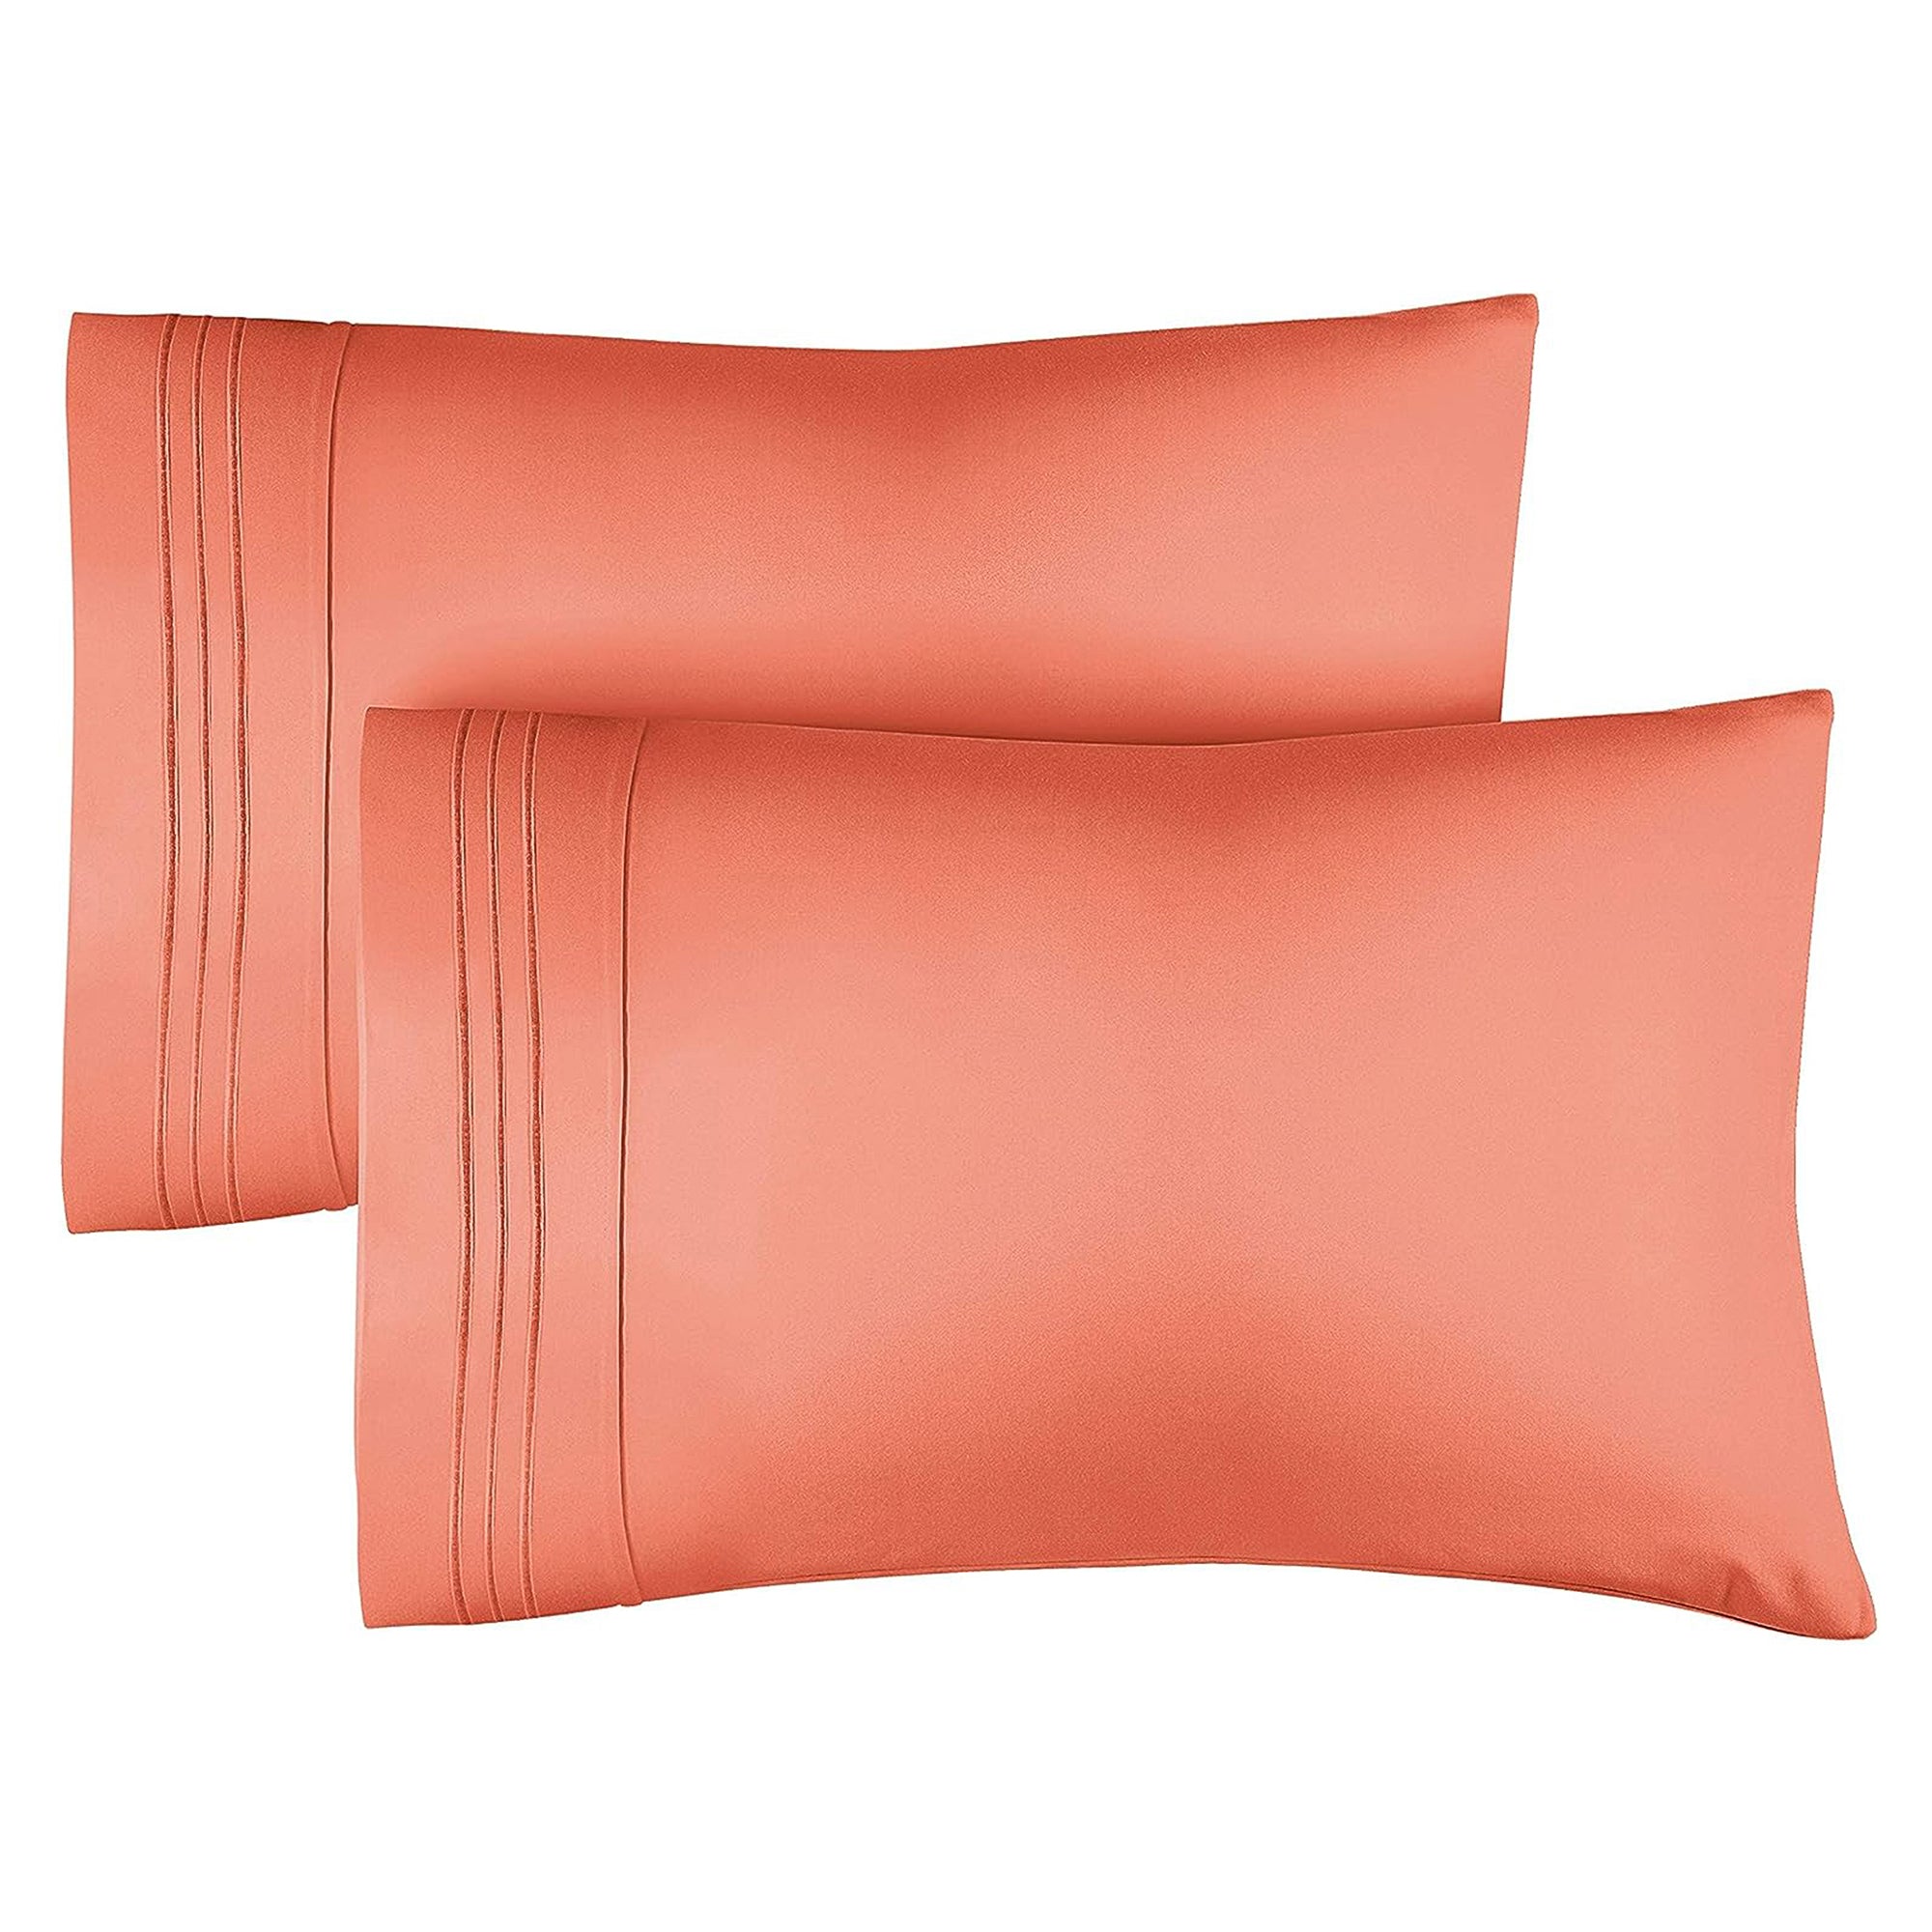 2 Pillowcase Set - Coral